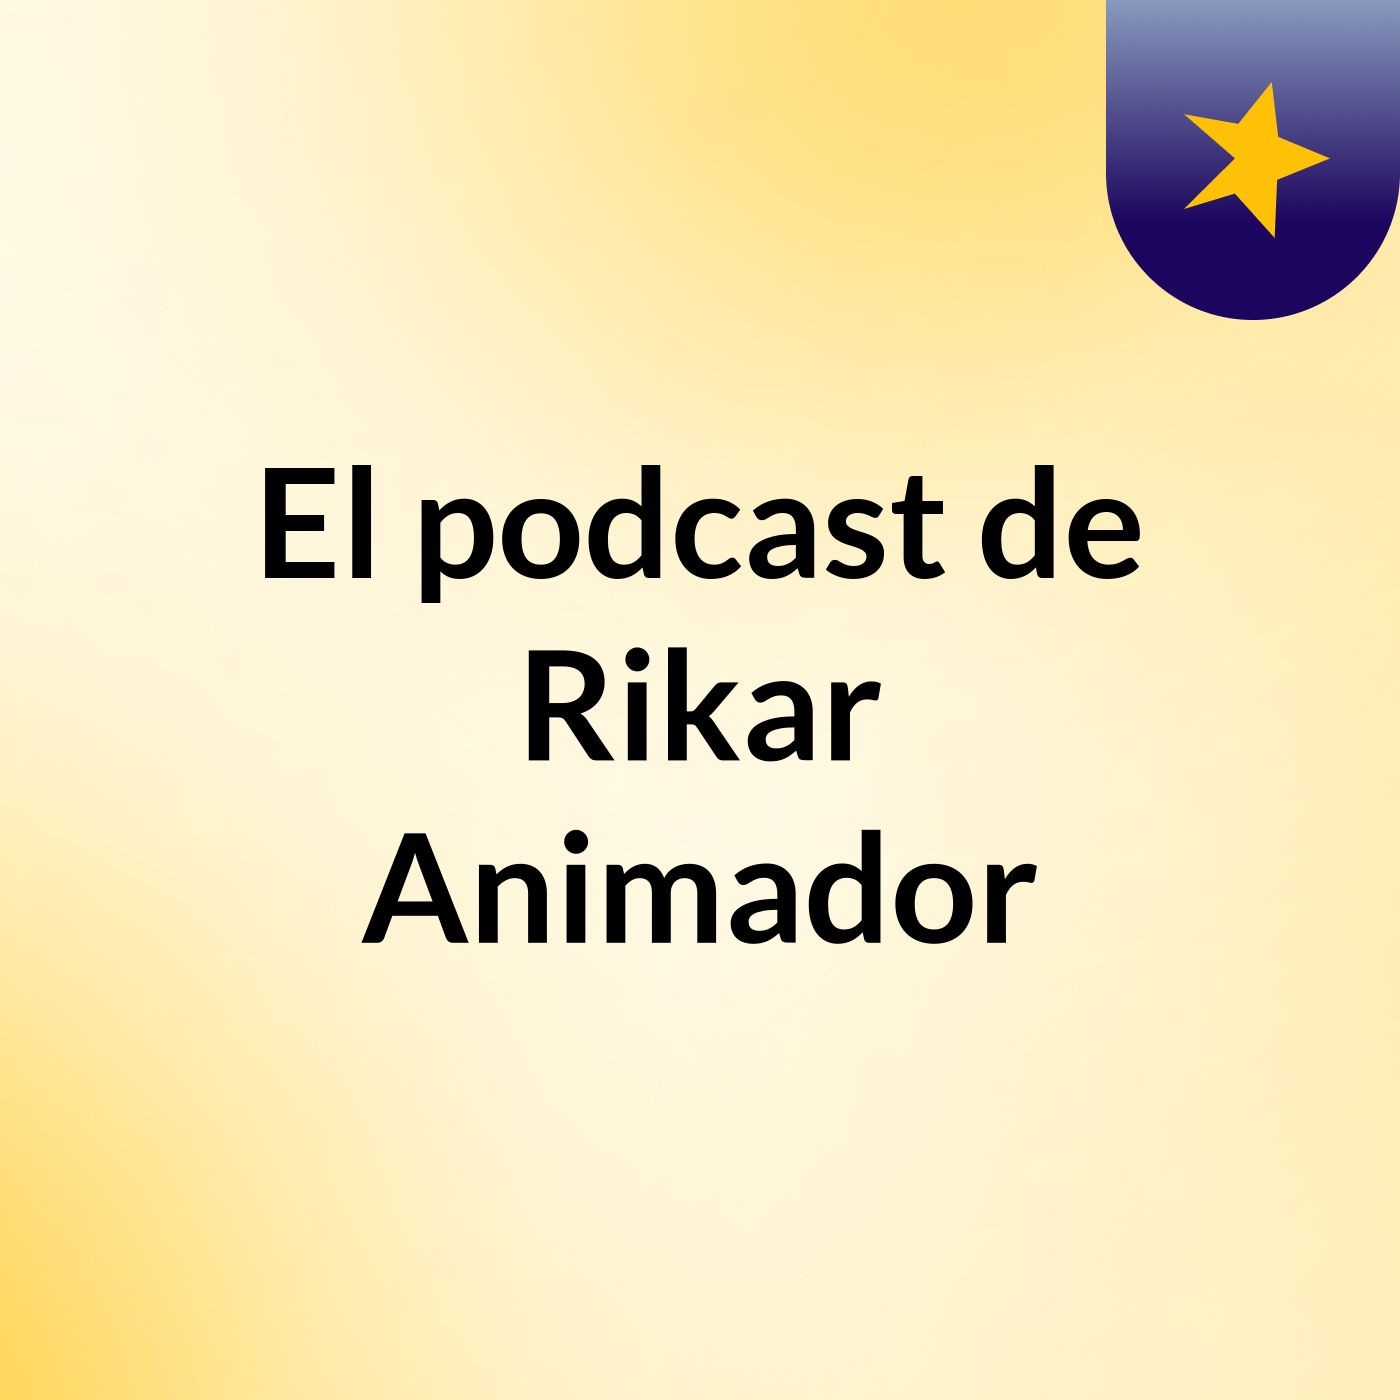 Episodio 4 - El podcast de Rikar Animador